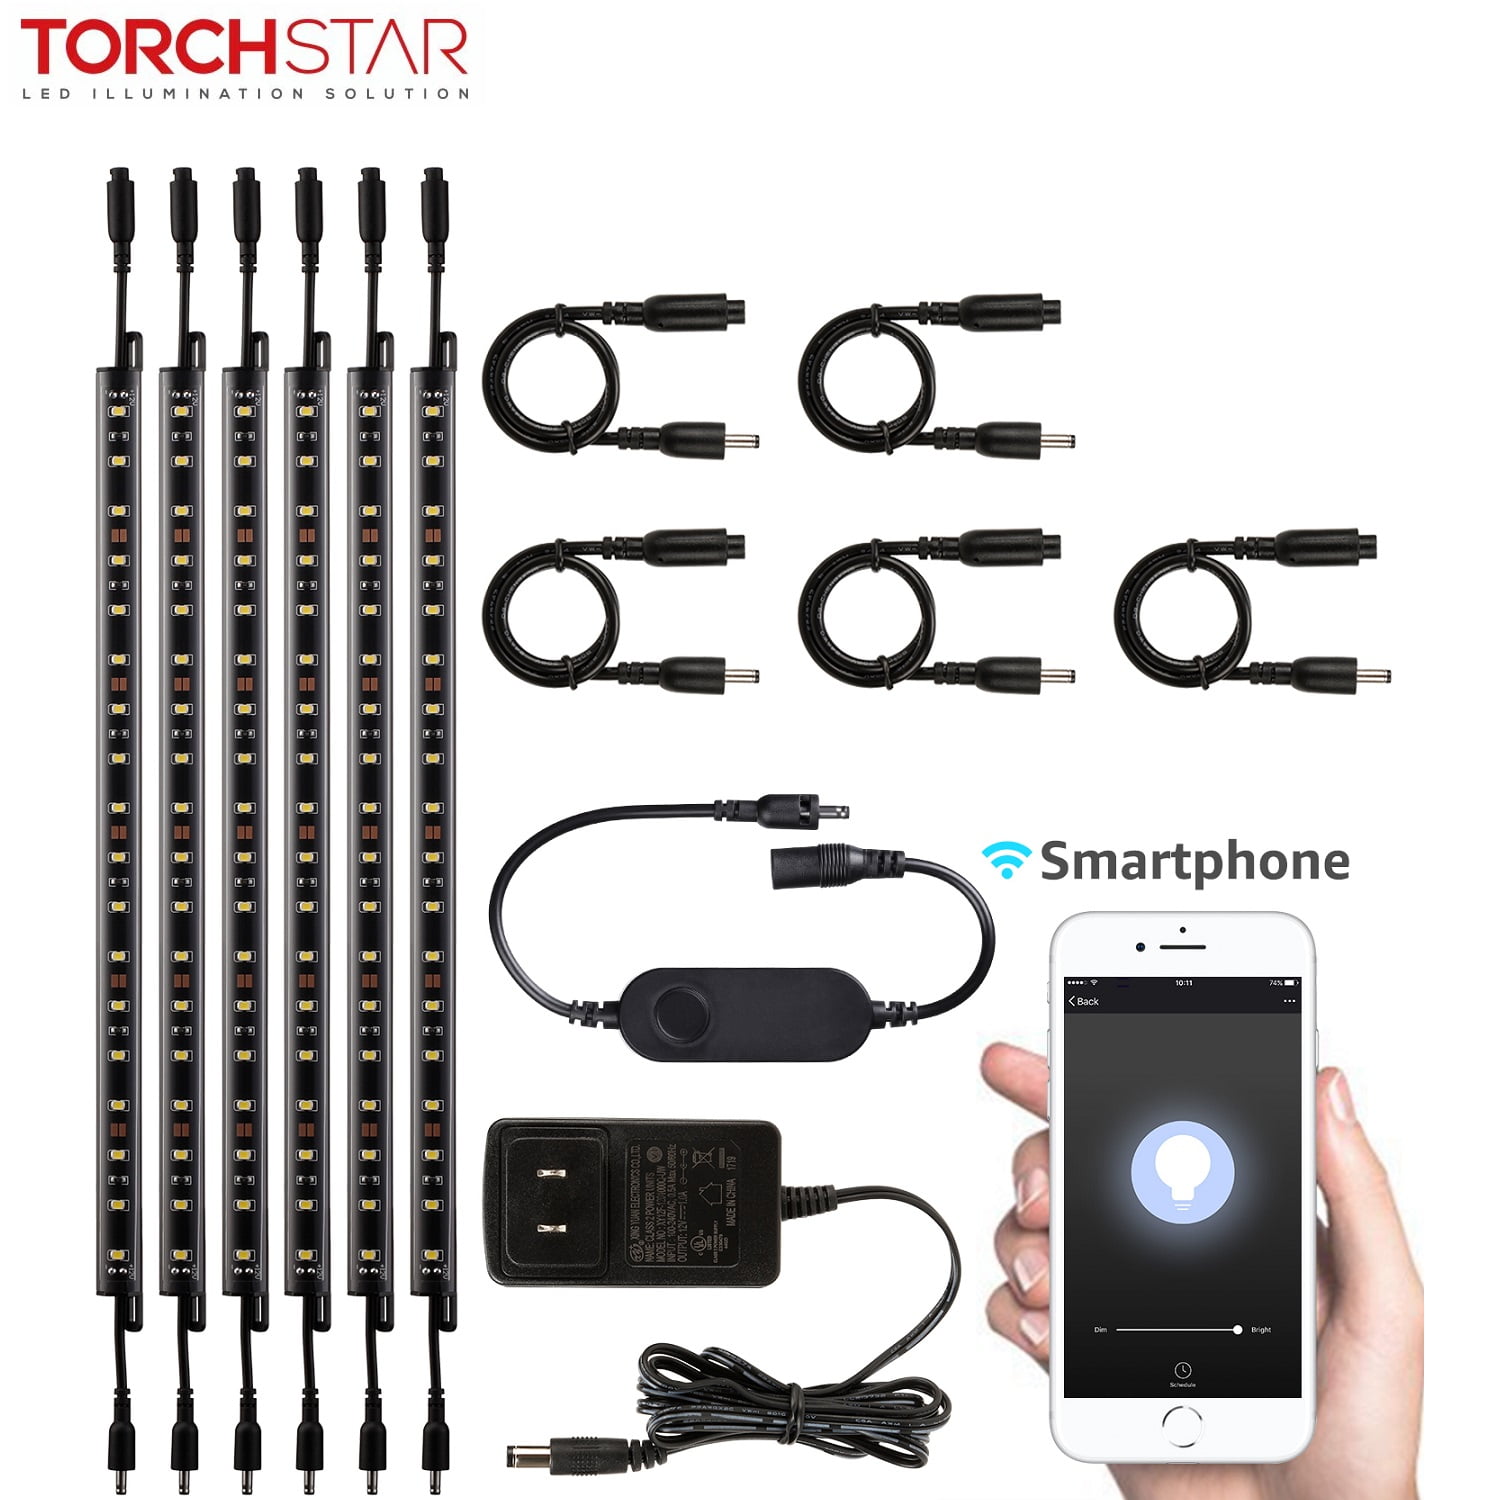 TORCHSTAR LED Safe Lighting Kit for Under Cabinet, Gun Safe, Shelf,  Showcas, (4) 12 Inch Linkable Light Bars + Rocker Switch + UL Adapter,  3000K Warm White, Pack of 4 